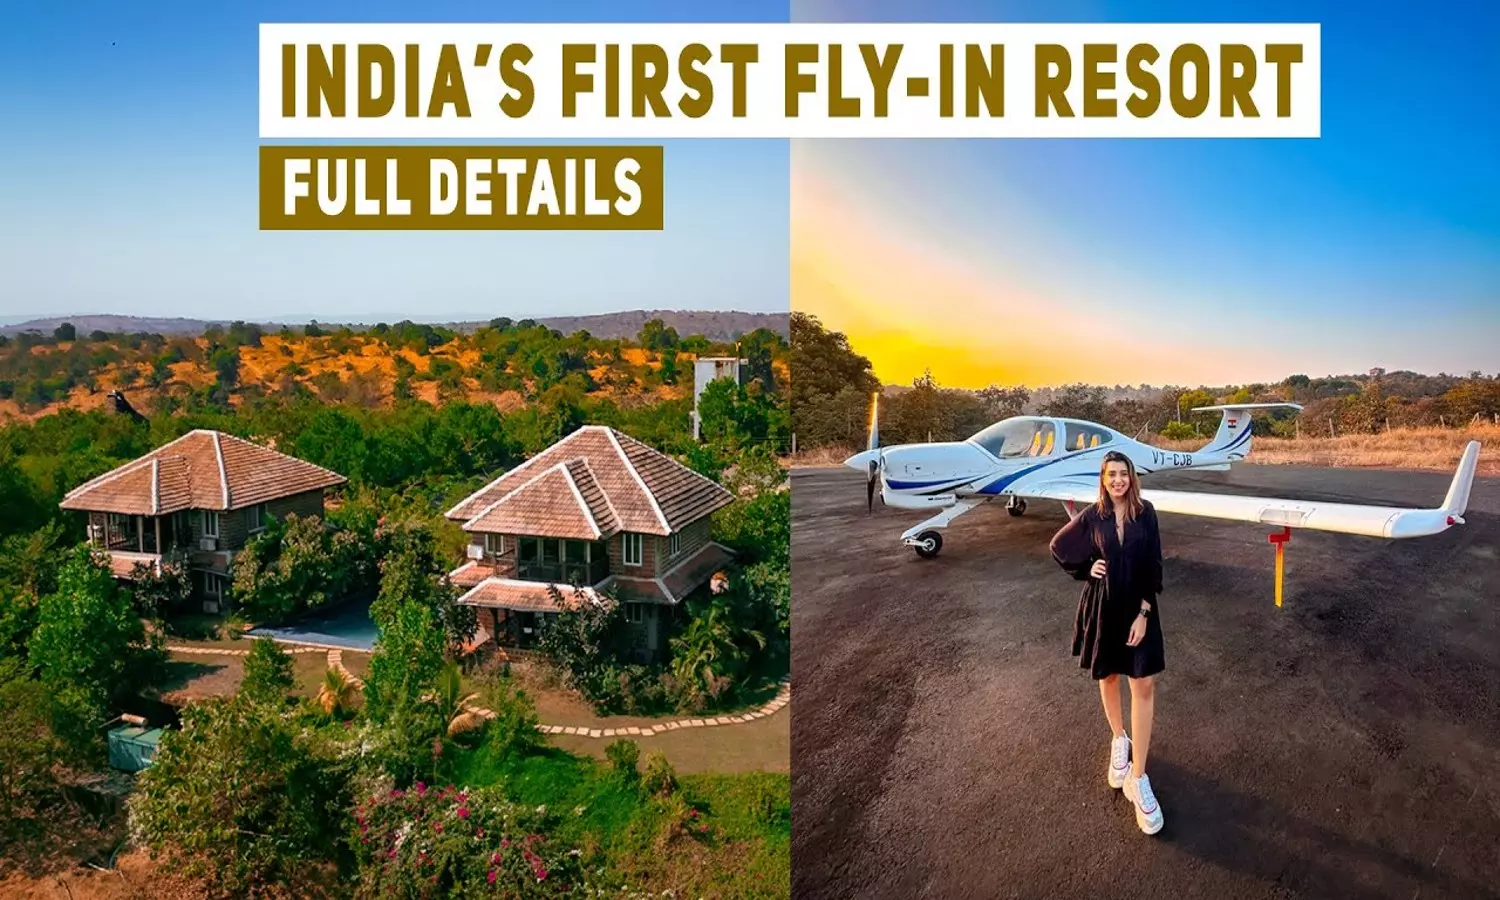 Flying Resort : ये है इंडिया का पहला फ्लाइंग रिजॉर्ट, मुंबई से करें शुरुआत और एडवेंचर का लें आनंद